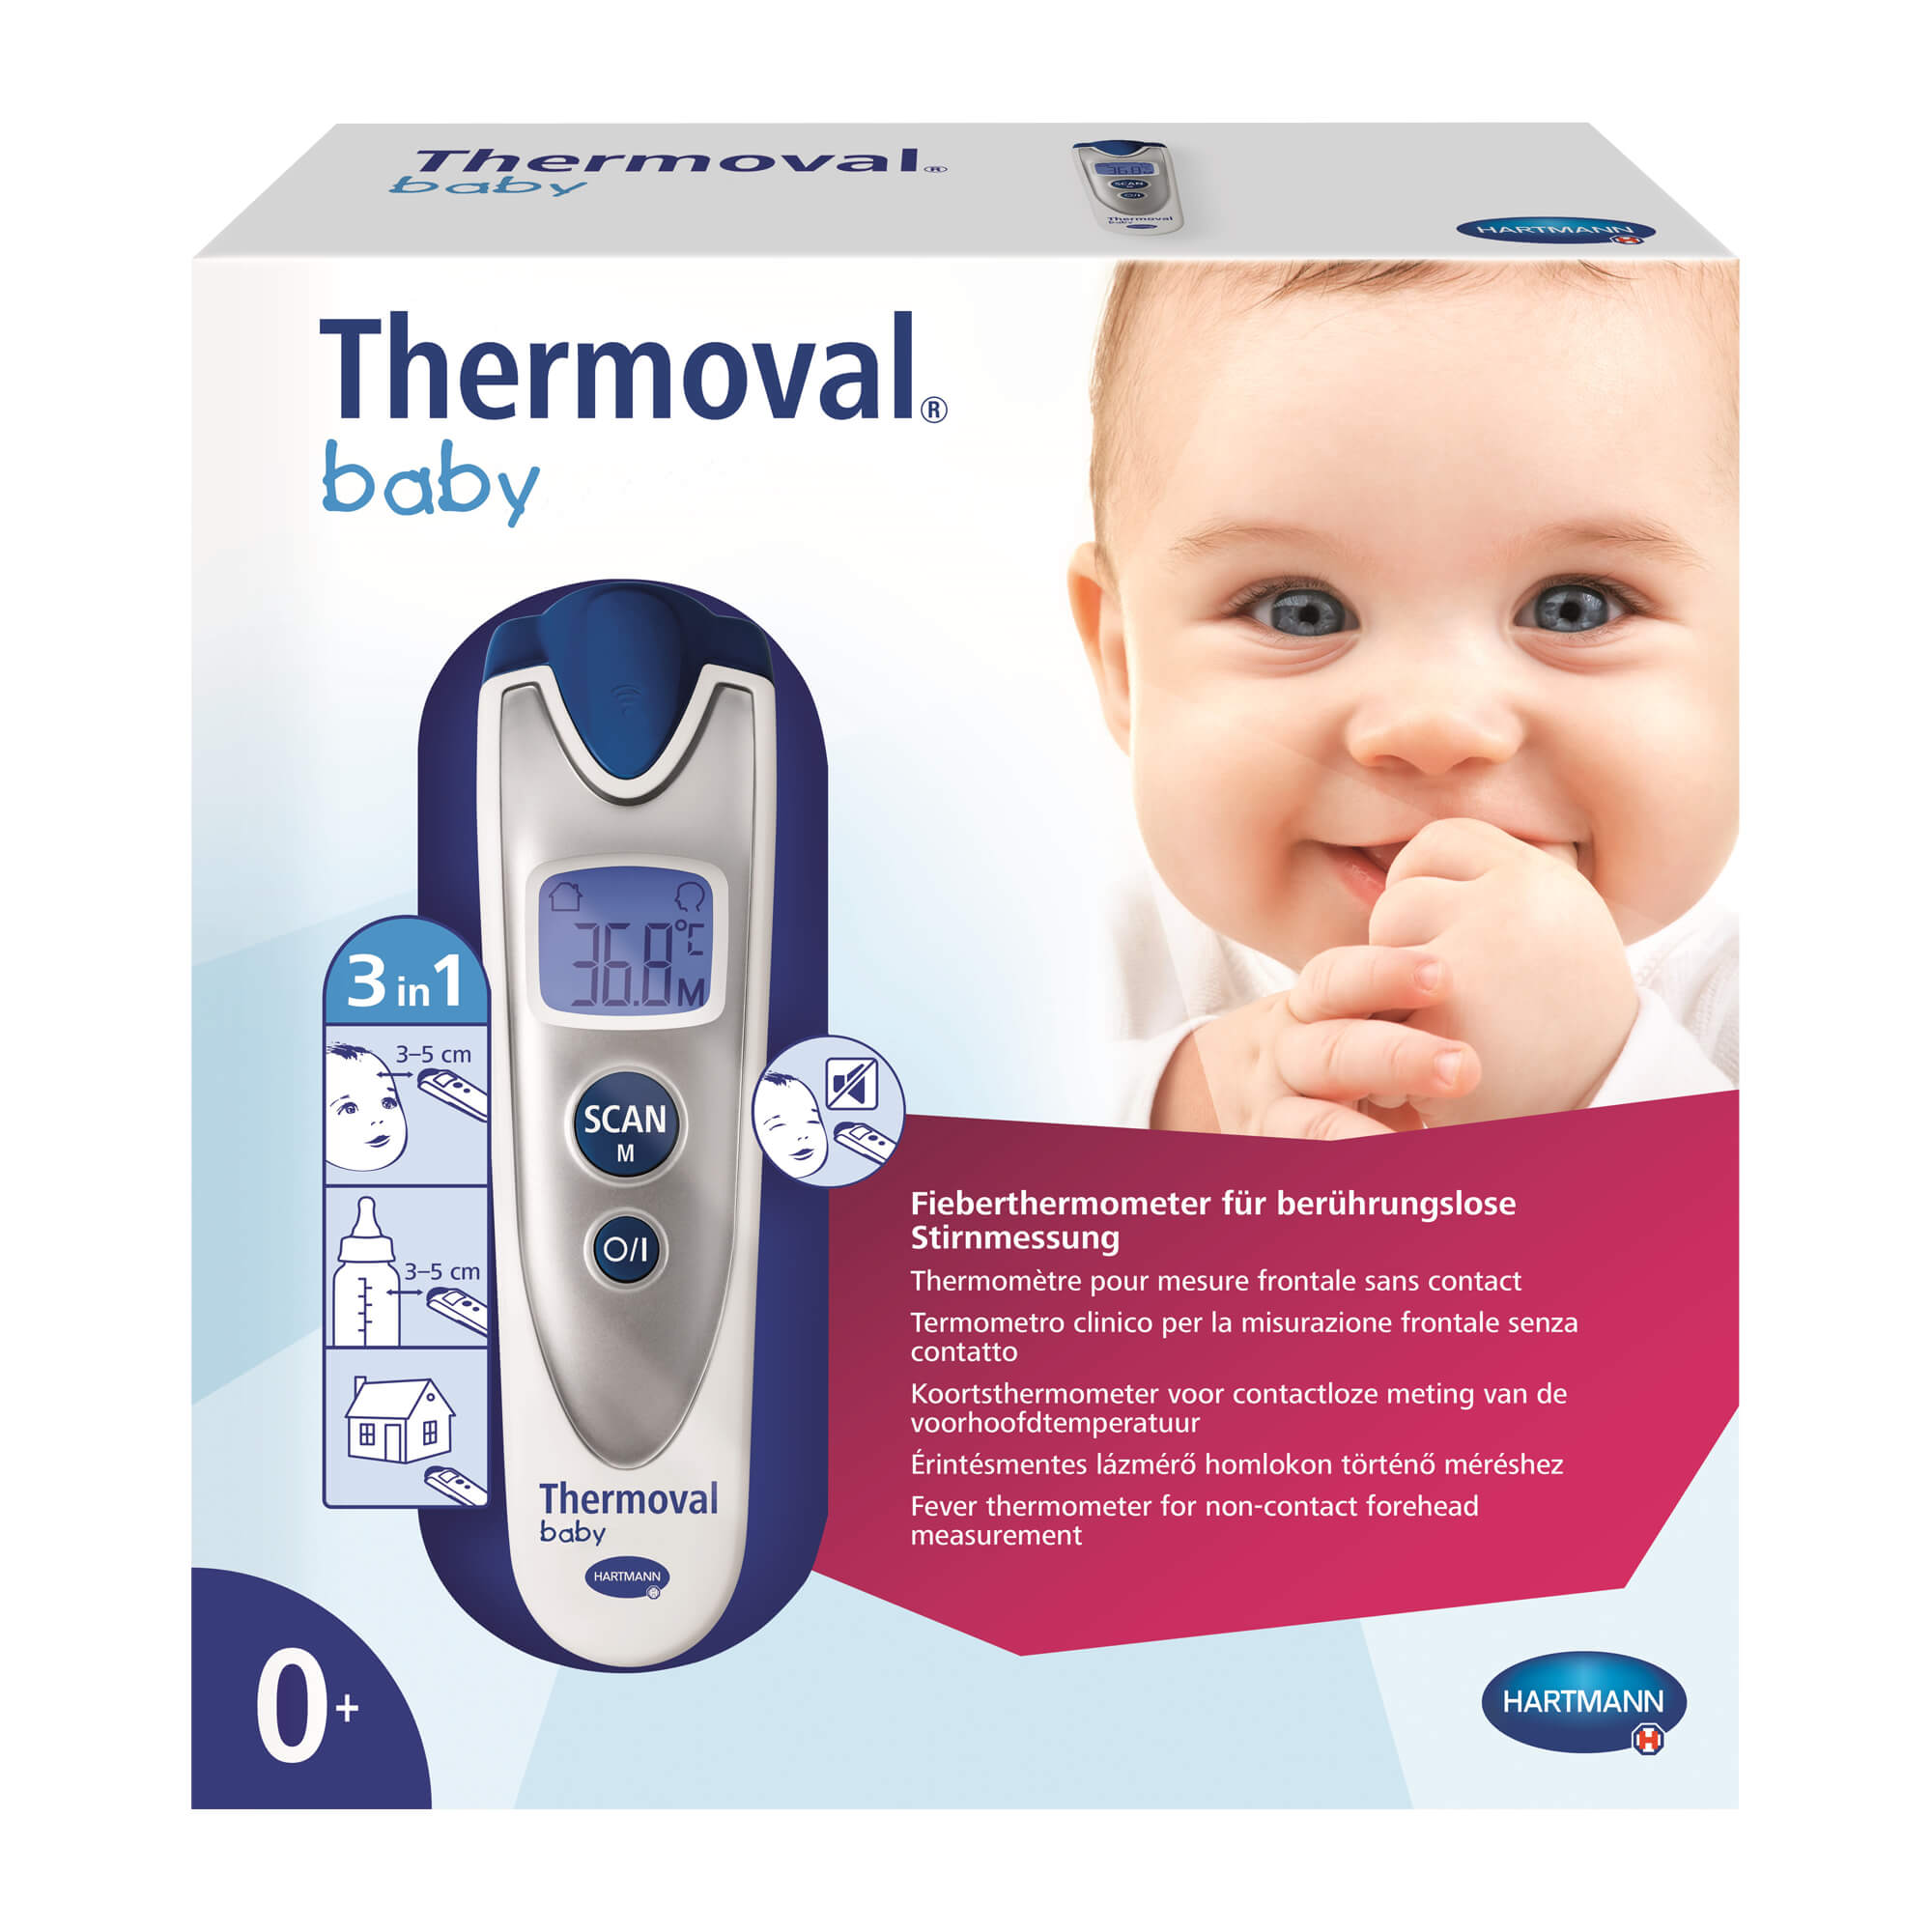 Infrarot-Thermometer für berührungslose und lautlose Temperaturmessung.